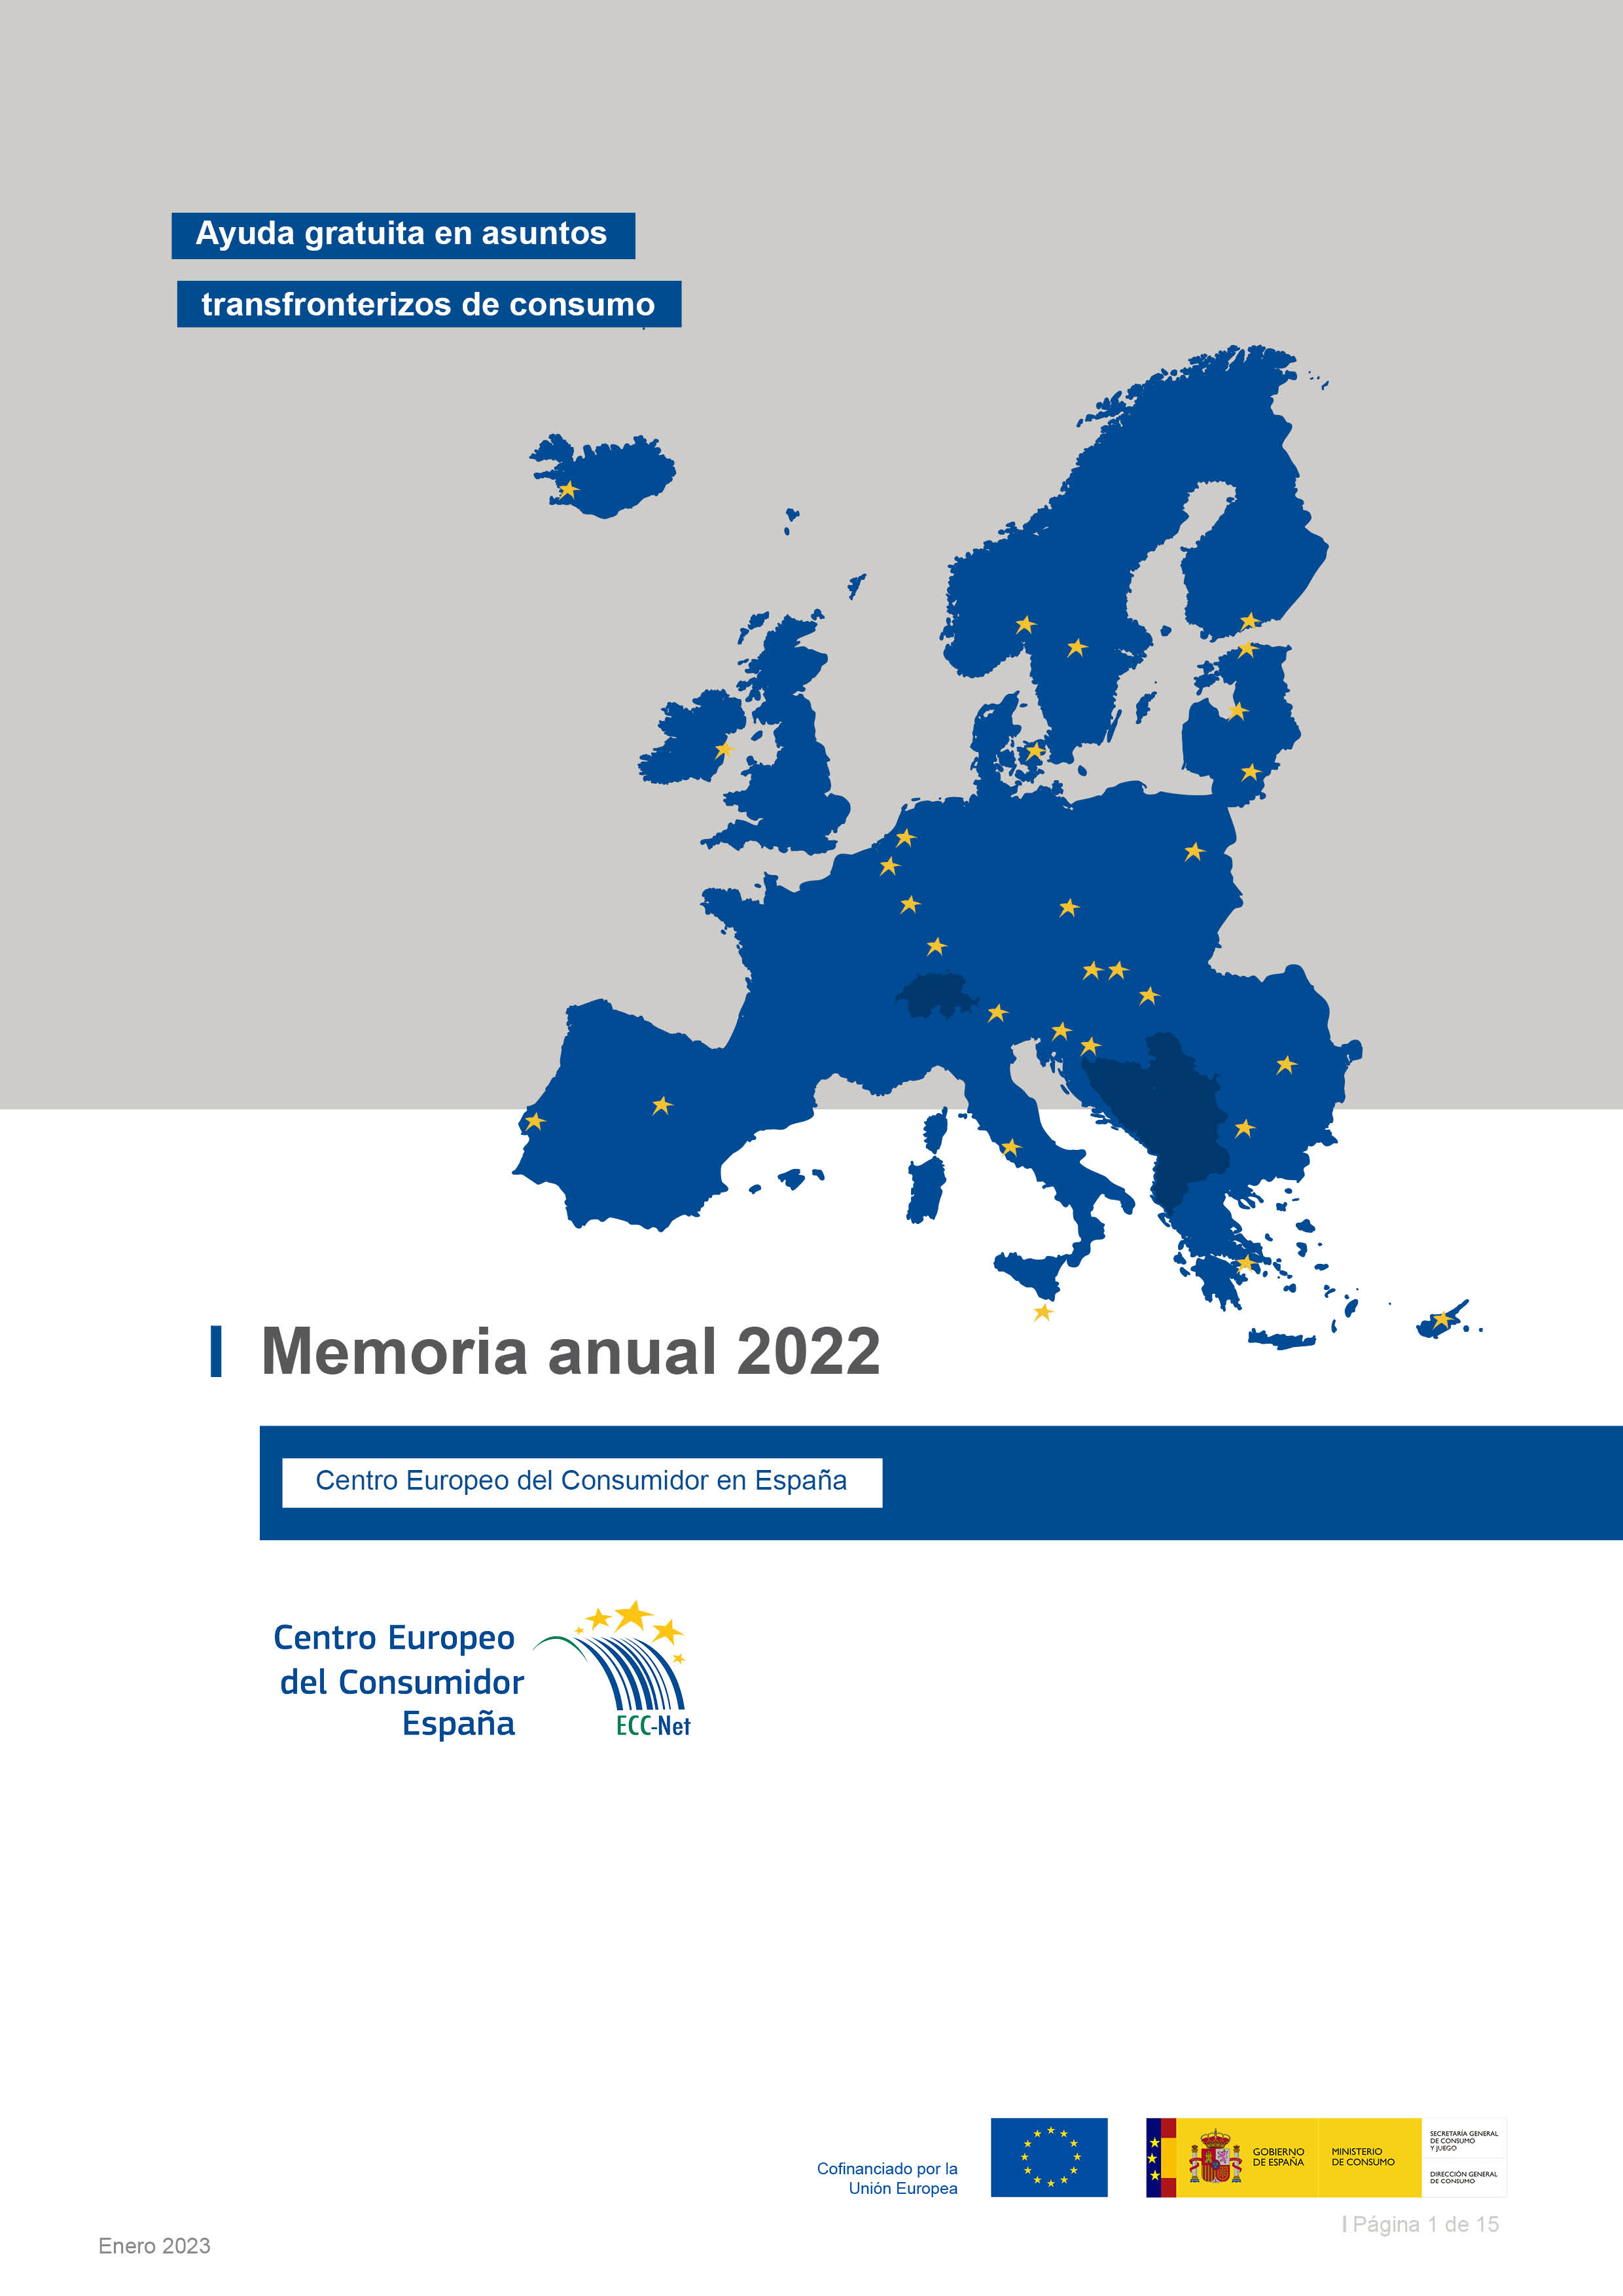 Mmeoria Anual 2022